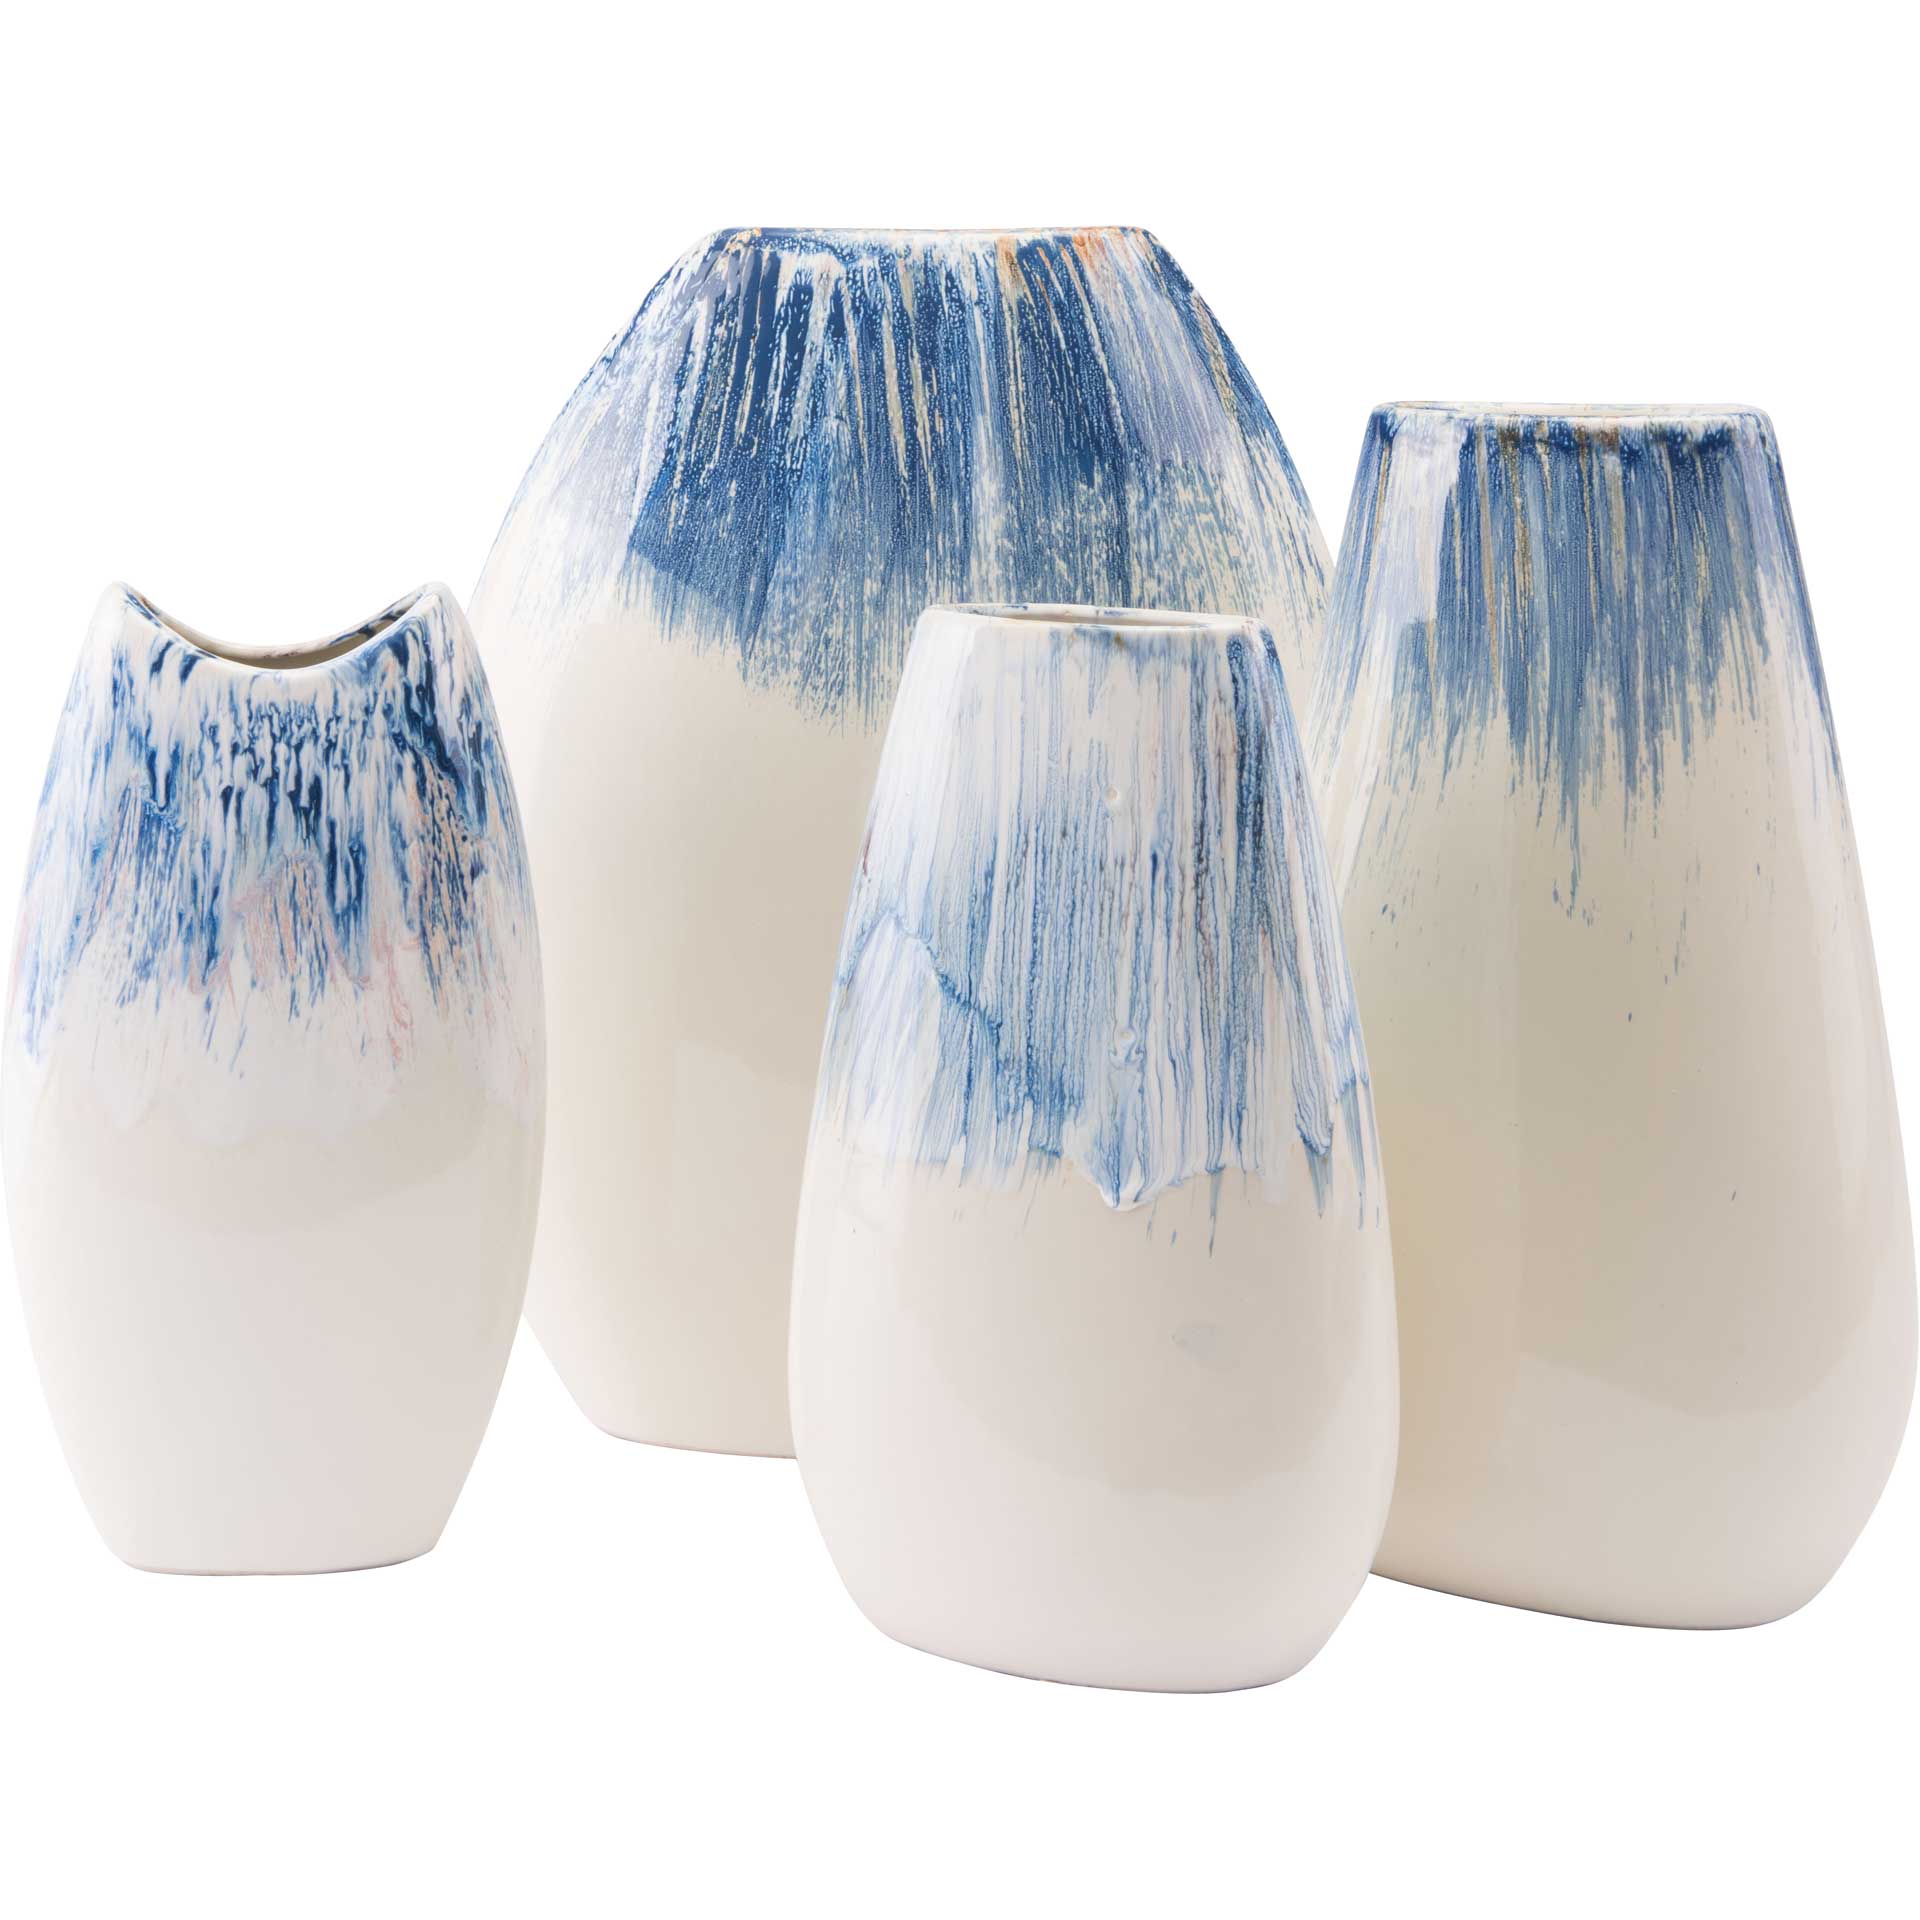 Ombre Vase Blue/White